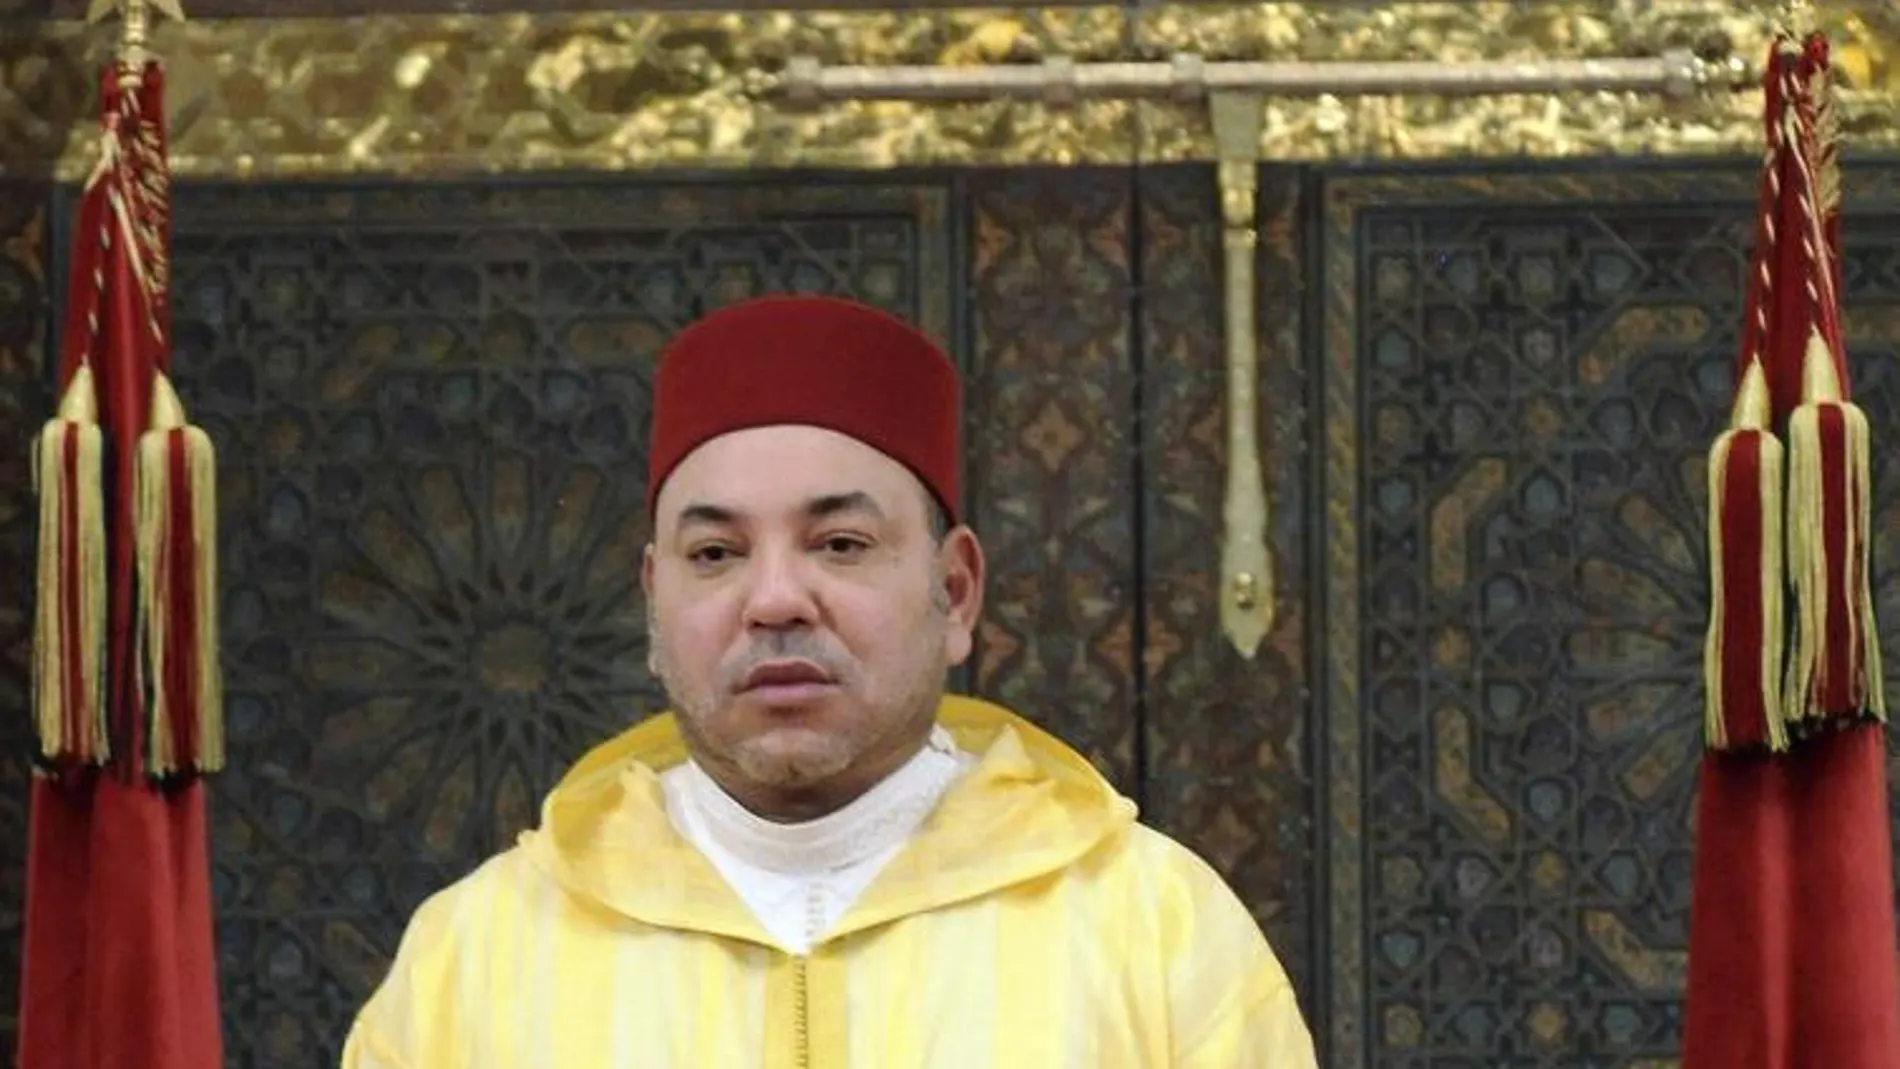 Fotografía facilitada por la Agencia de Prensa marroquí (MAP) del rey Mohamed VI de Marruecos mientras pronuncia su discurso durante la celebración de la Fiesta del Trono, el 30 de julio de 2013